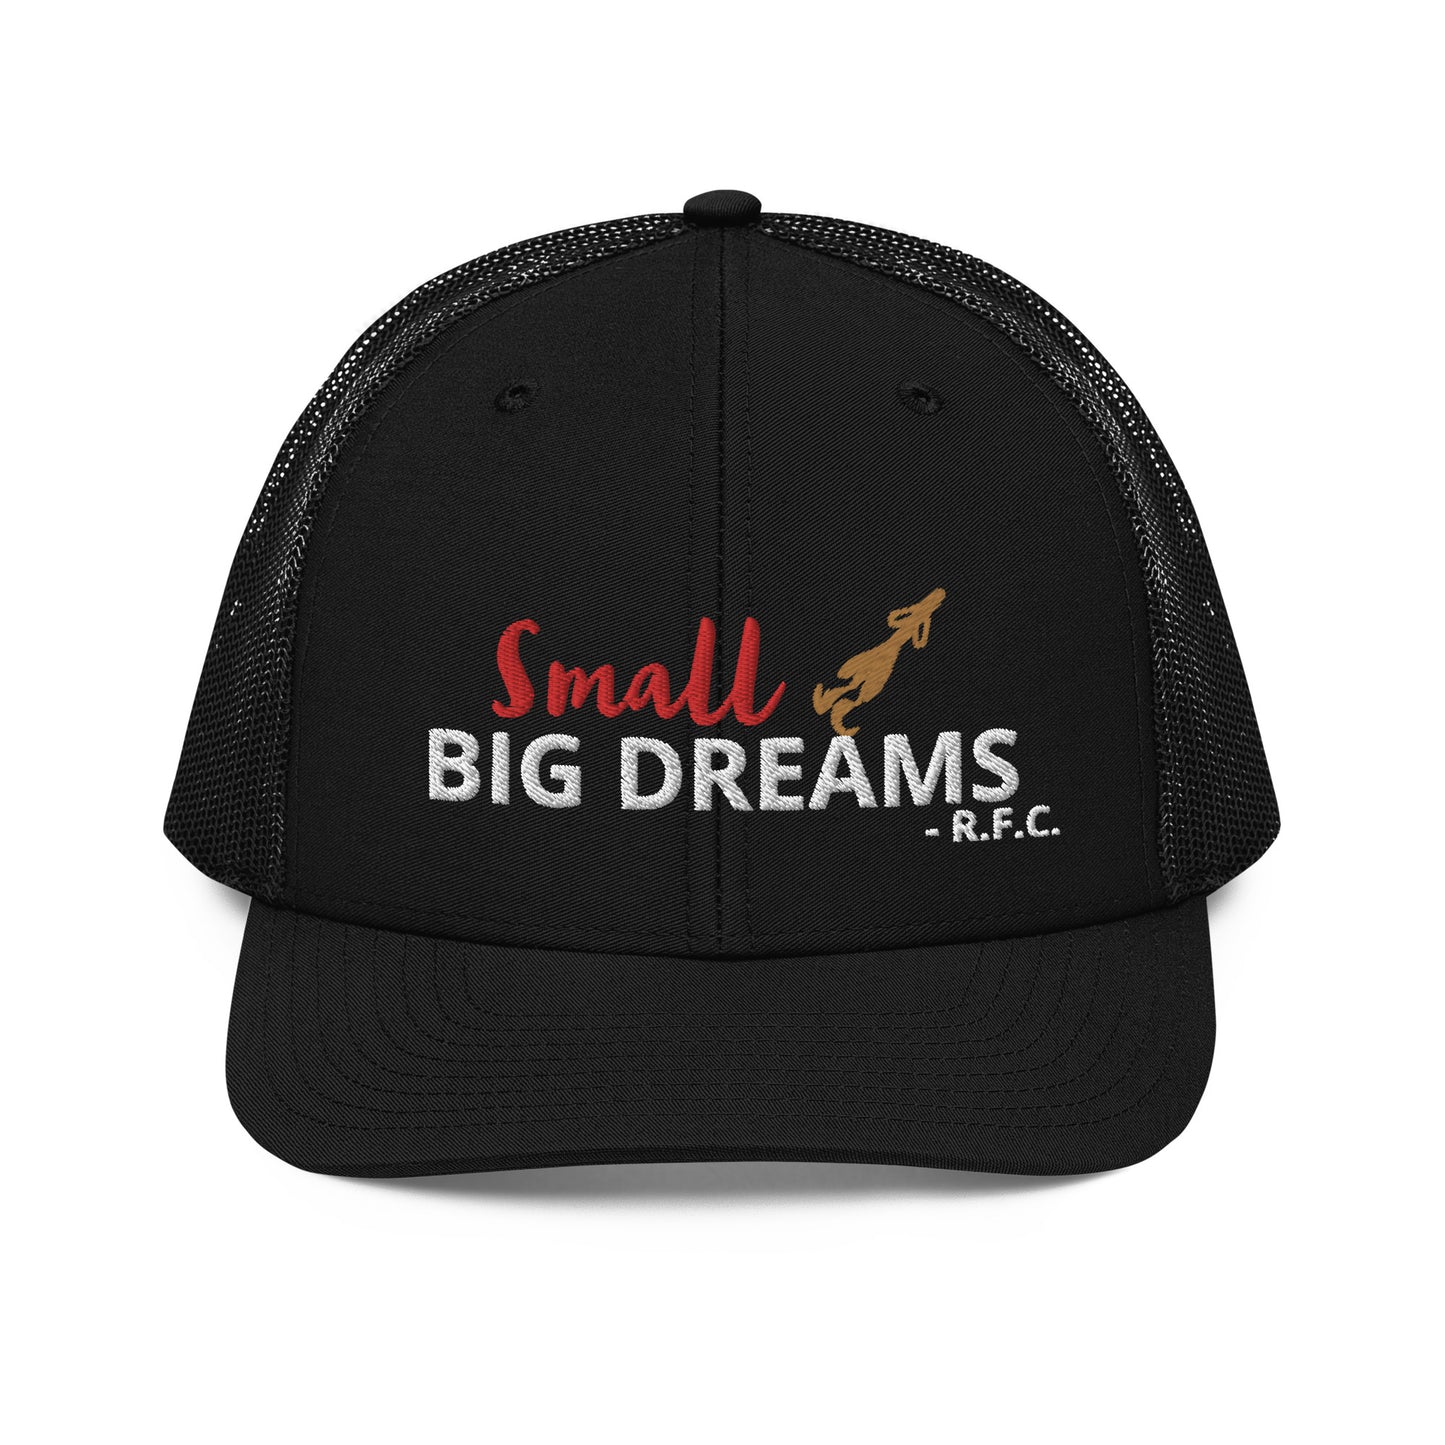 Small Hog Big Dreams Trucker Cap